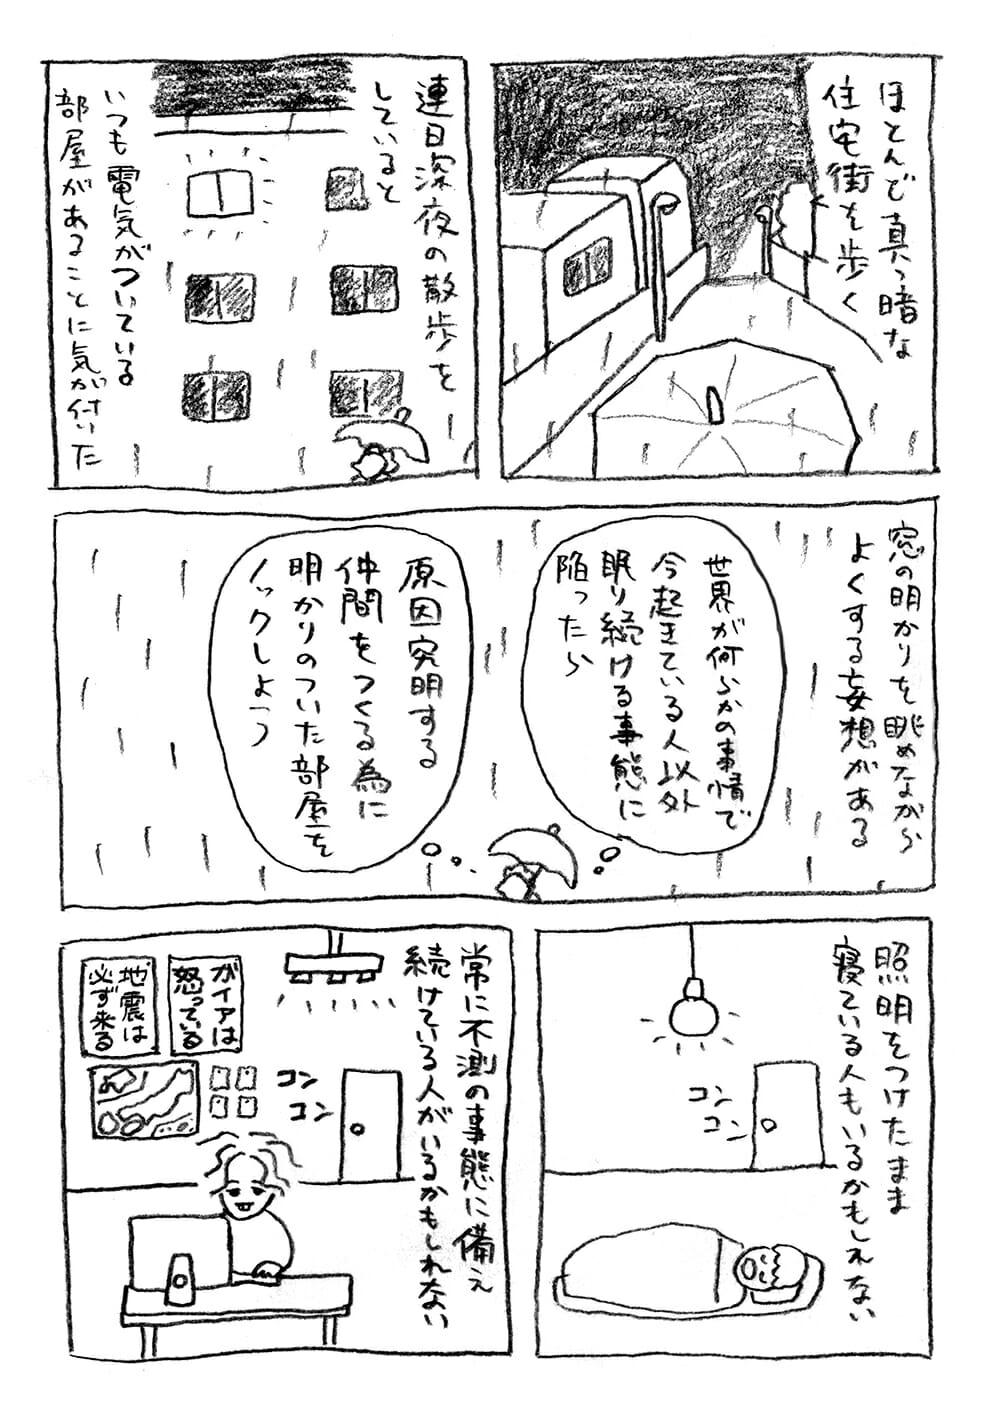 トーチwebの山田さんによる漫画『近況』